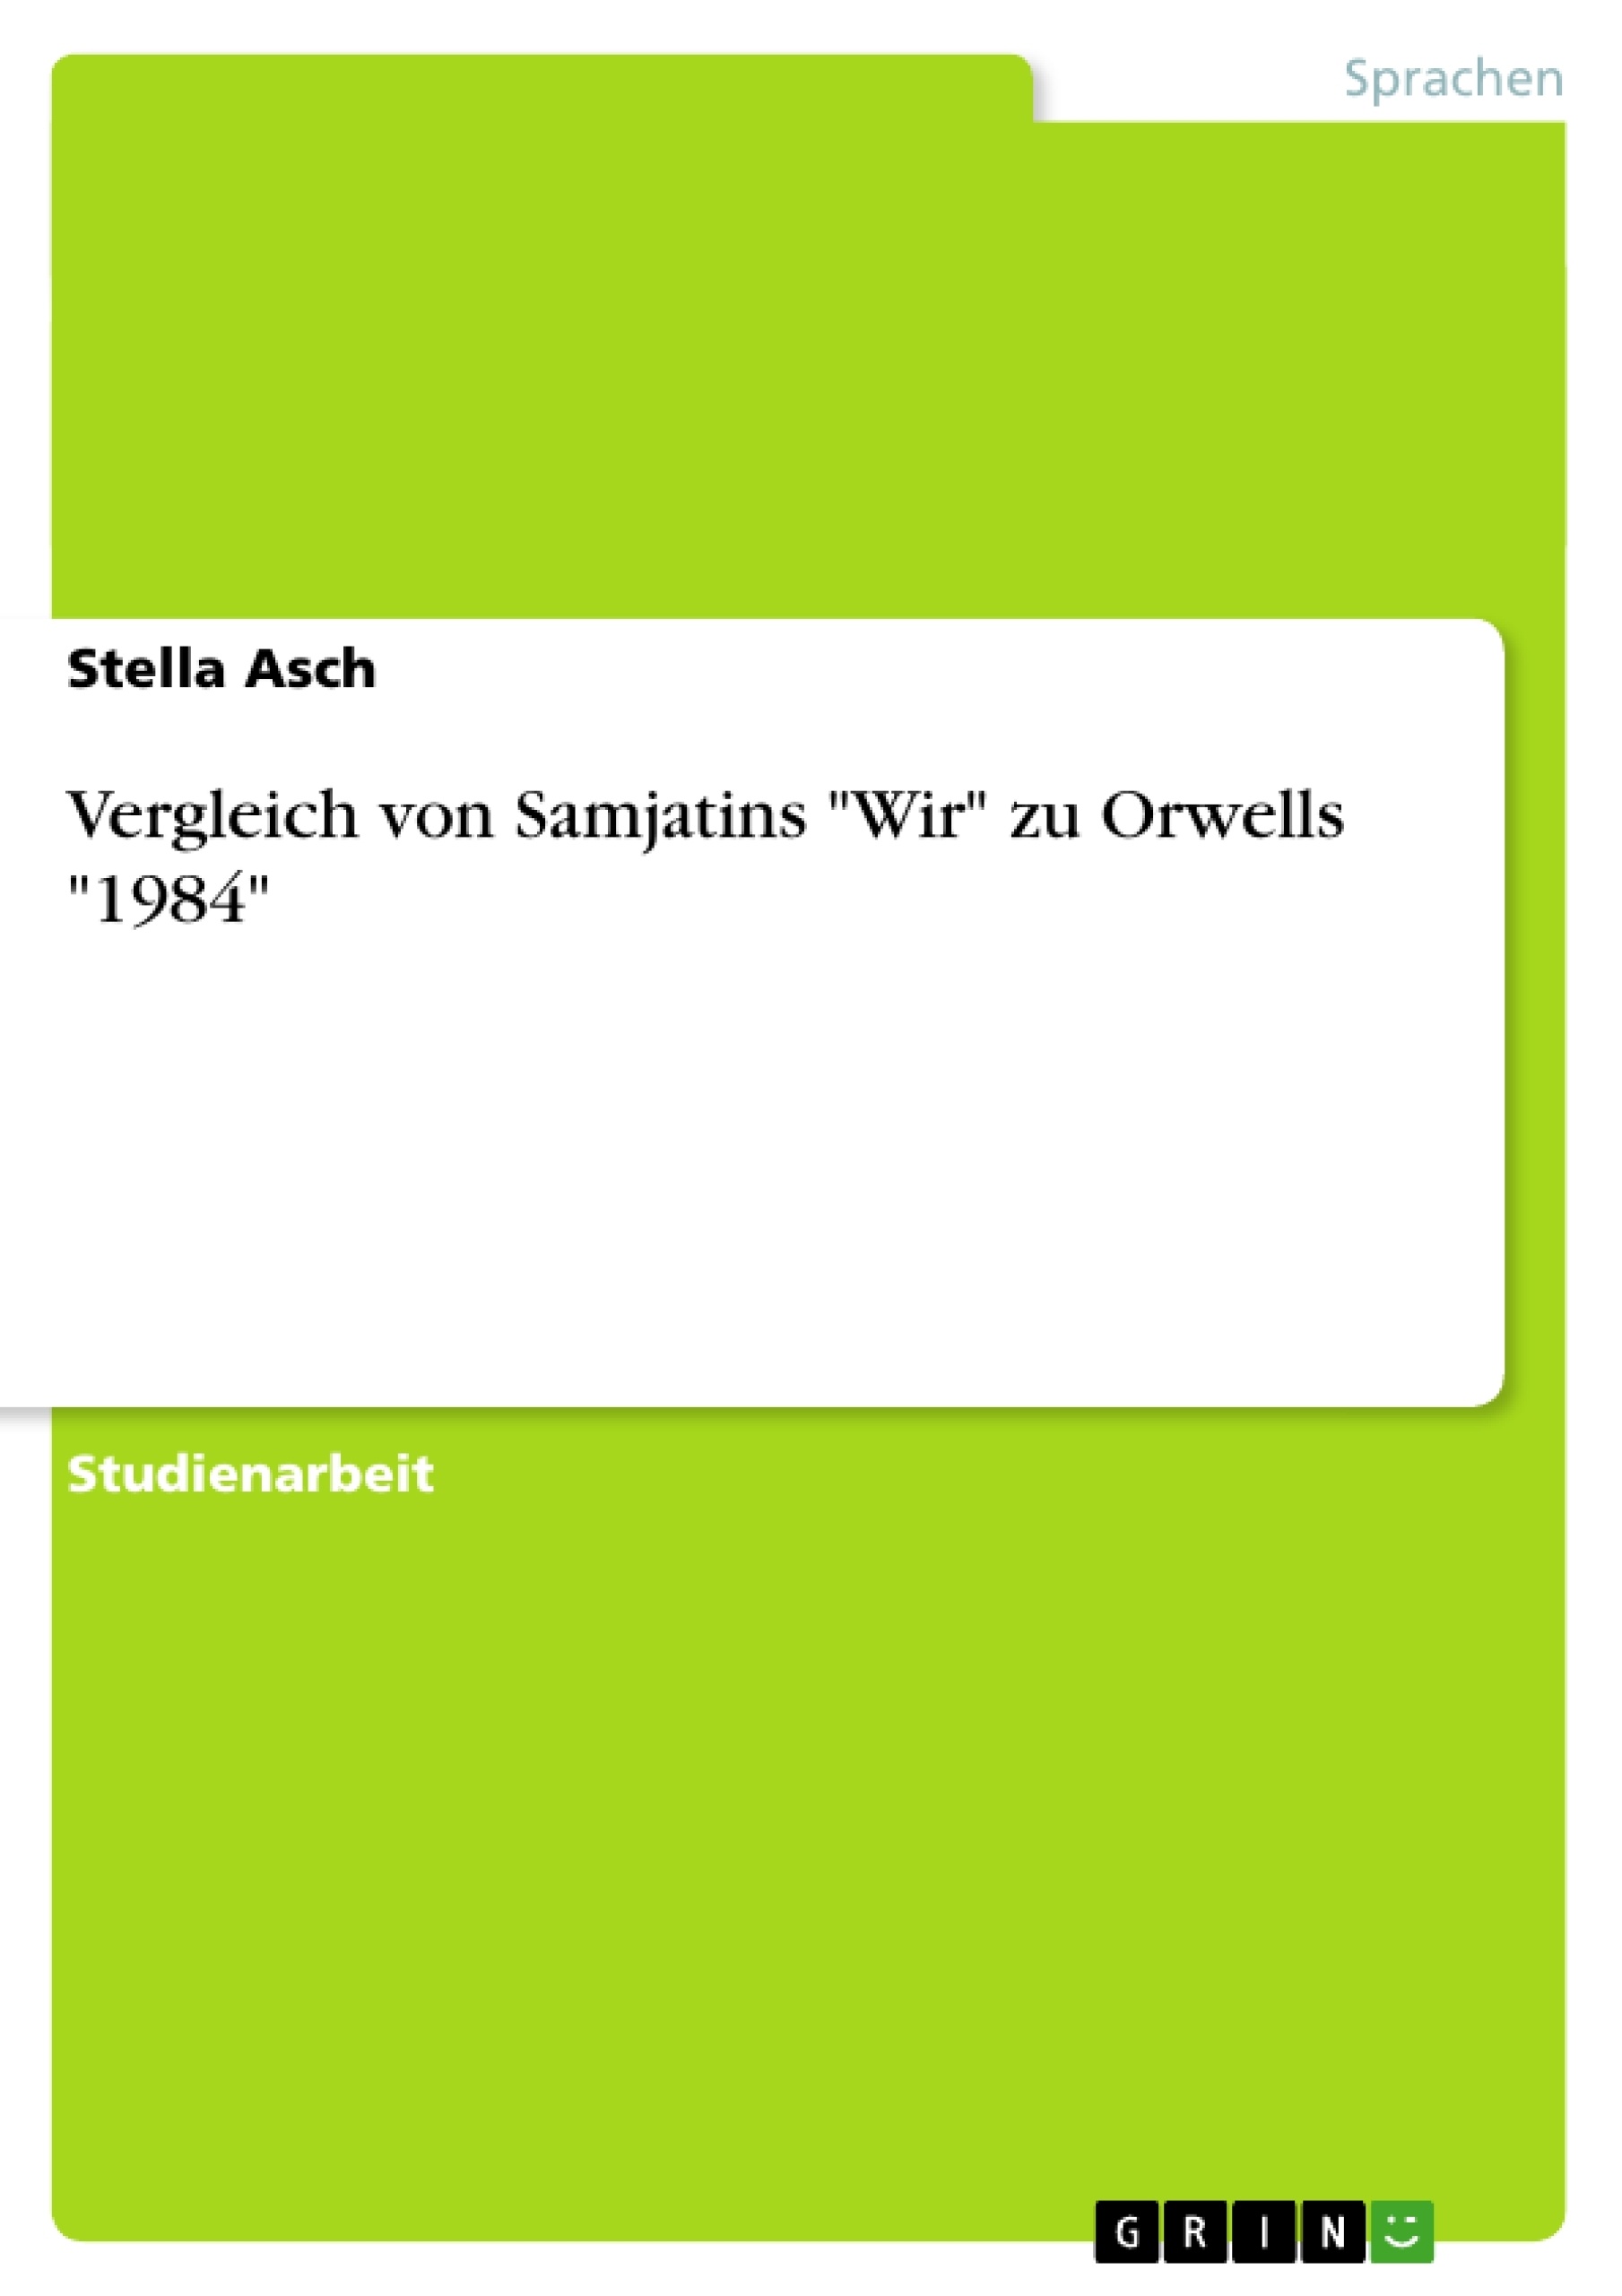 Title: Vergleich von Samjatins "Wir" zu Orwells "1984"